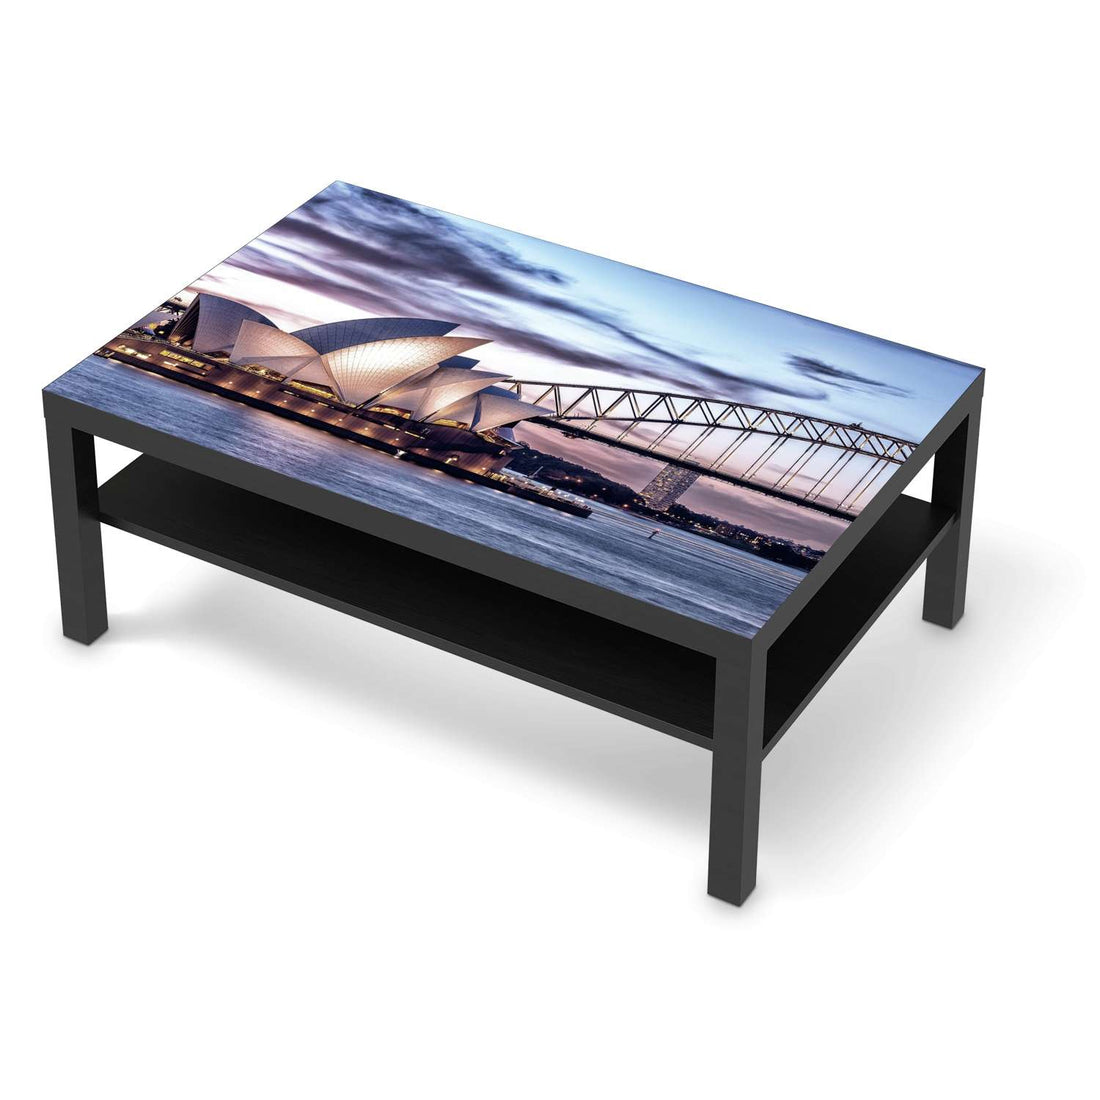 Klebefolie Sydney - IKEA Lack Tisch 118x78 cm - schwarz